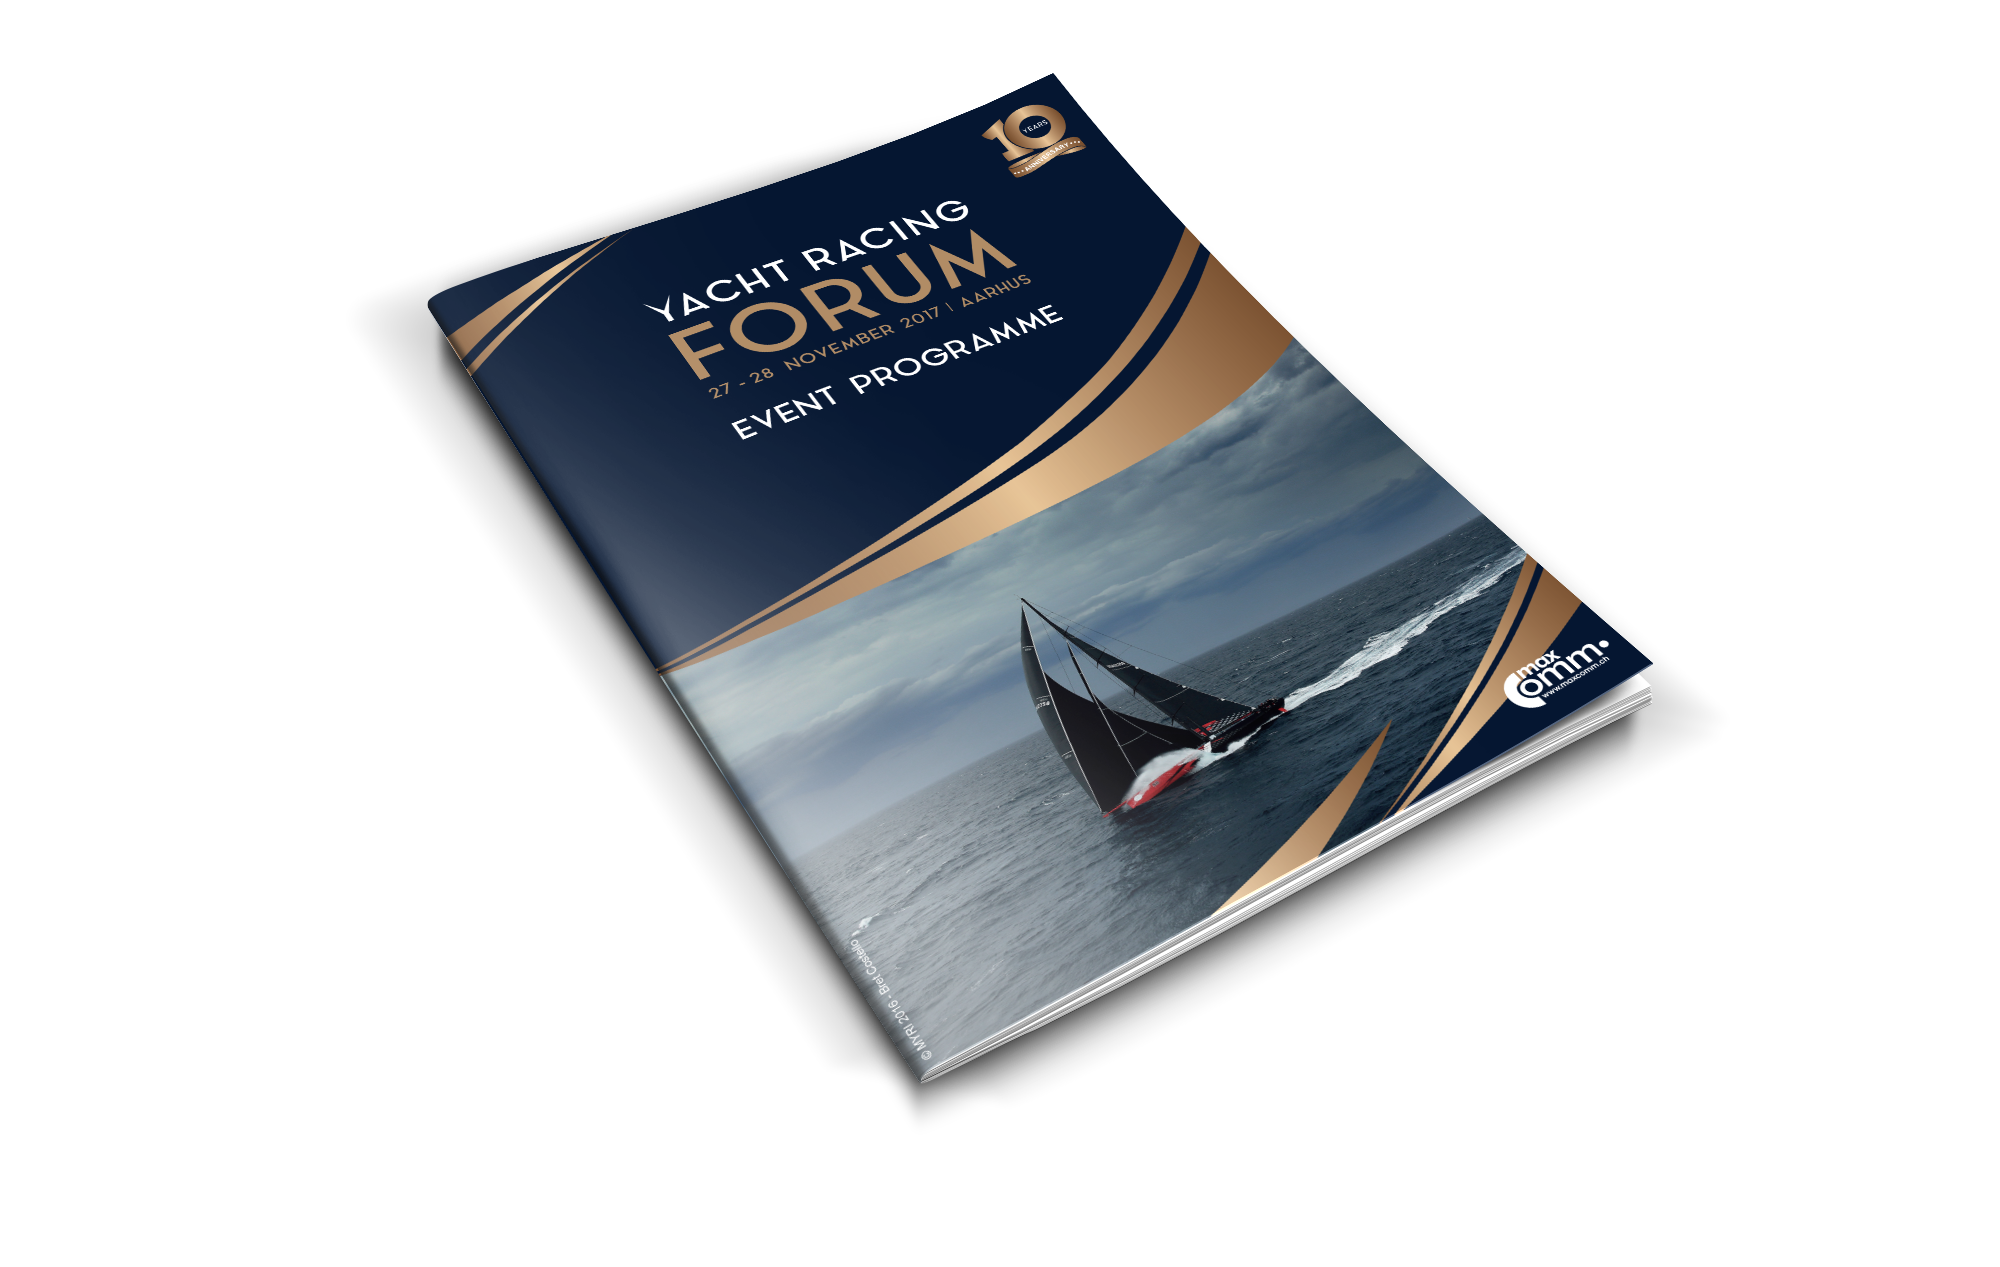 Yacht Racing Forum website